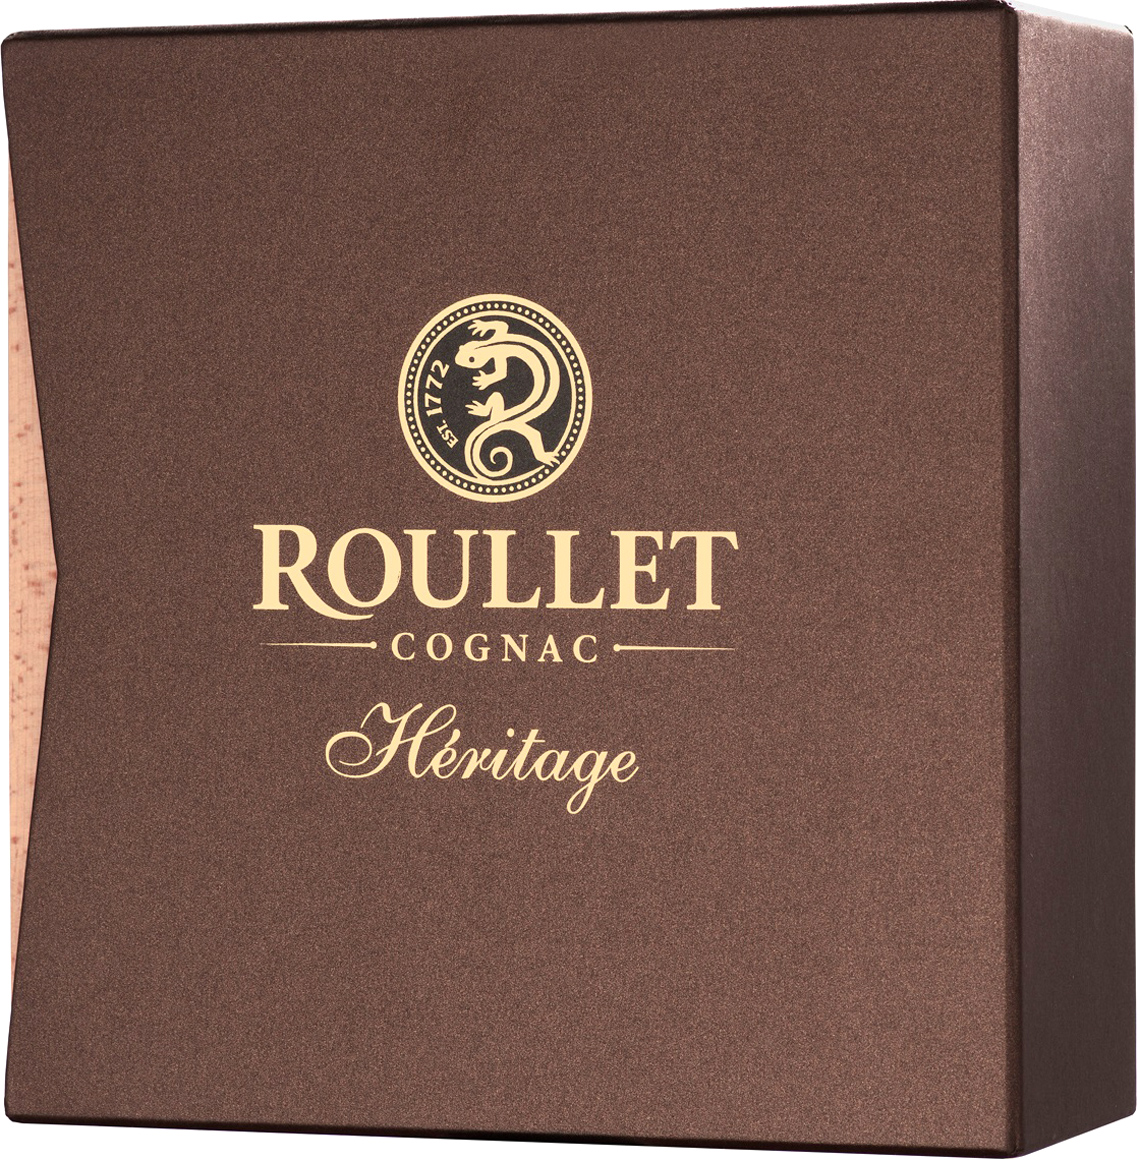 Roullet cognac цена. Roullet Heritage fins bois. Коньяк французский Рулле Эритаж фэн. Рулле Эритаж фэн Буа. Коньяк «Roullet XO Limited Edition Art de ZAFI».